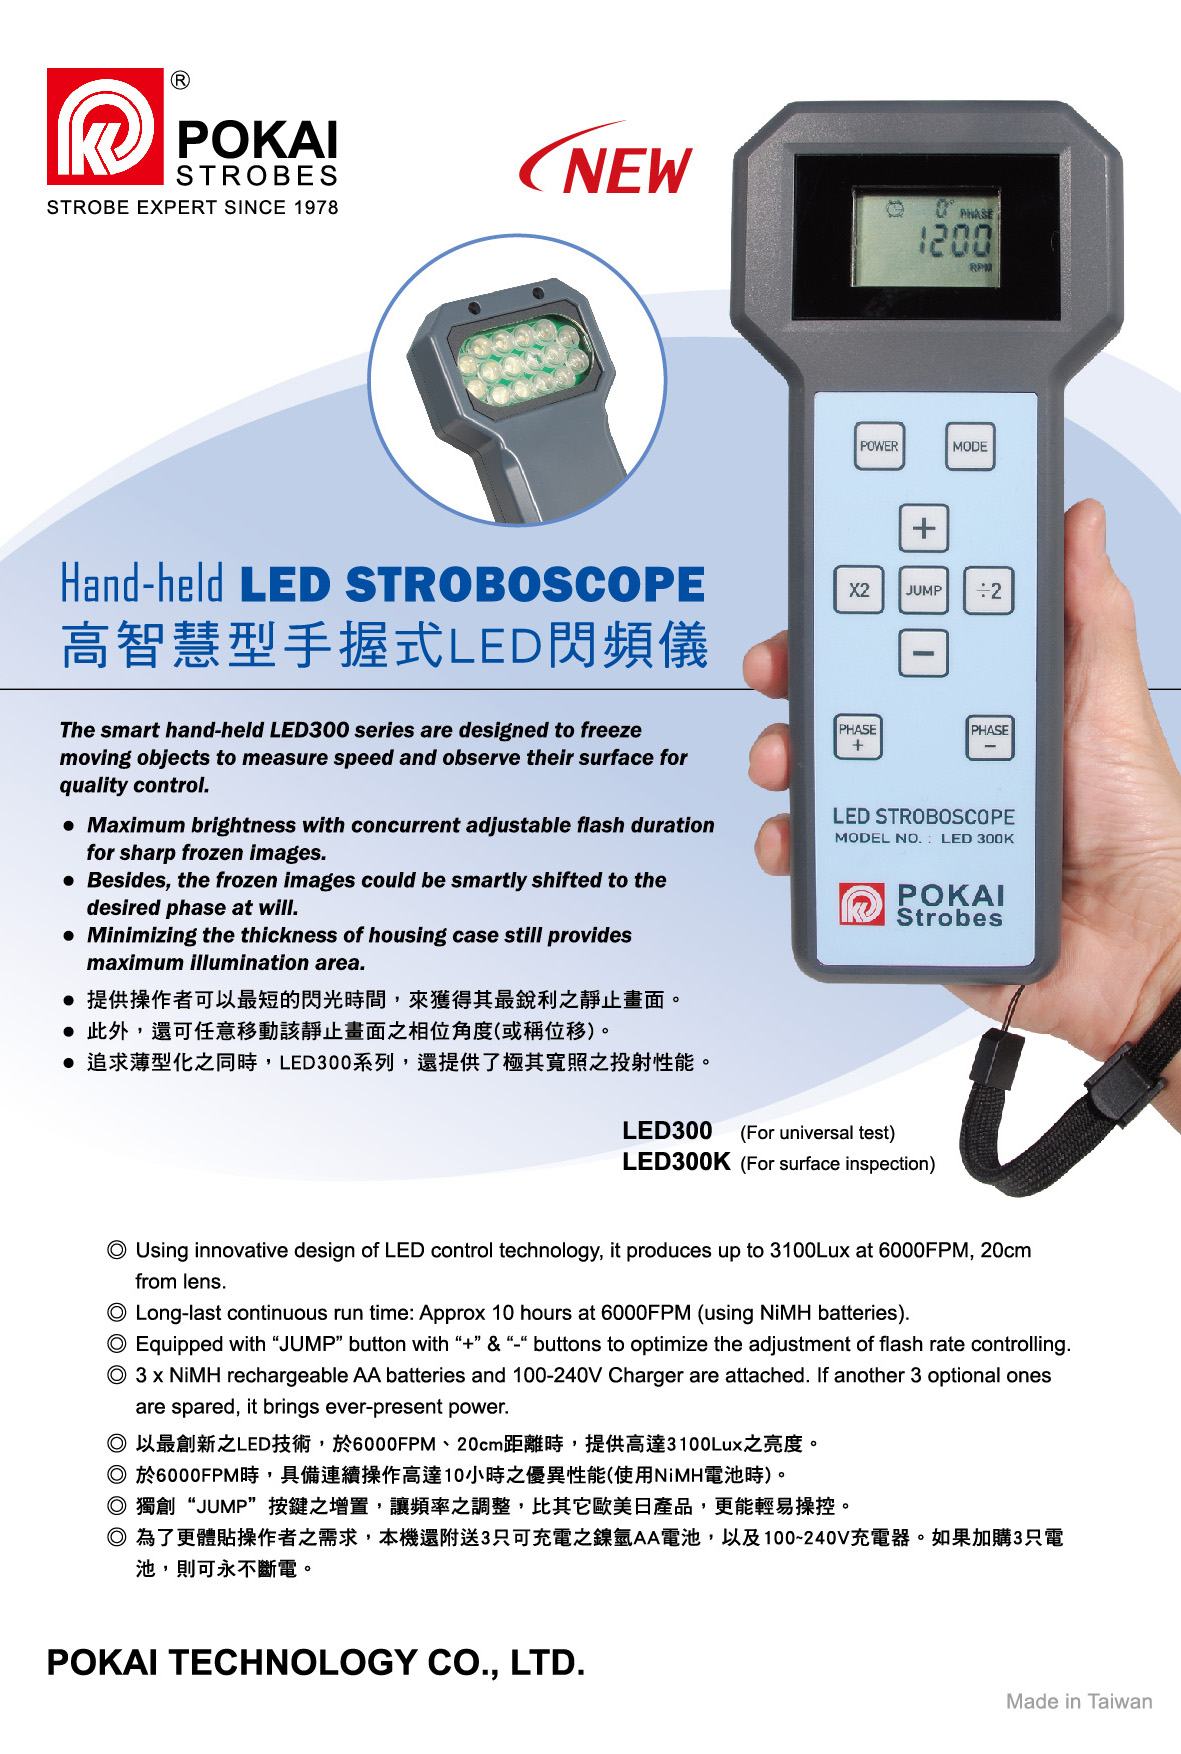 Hand-held LED STROBOSCOPE LED300K